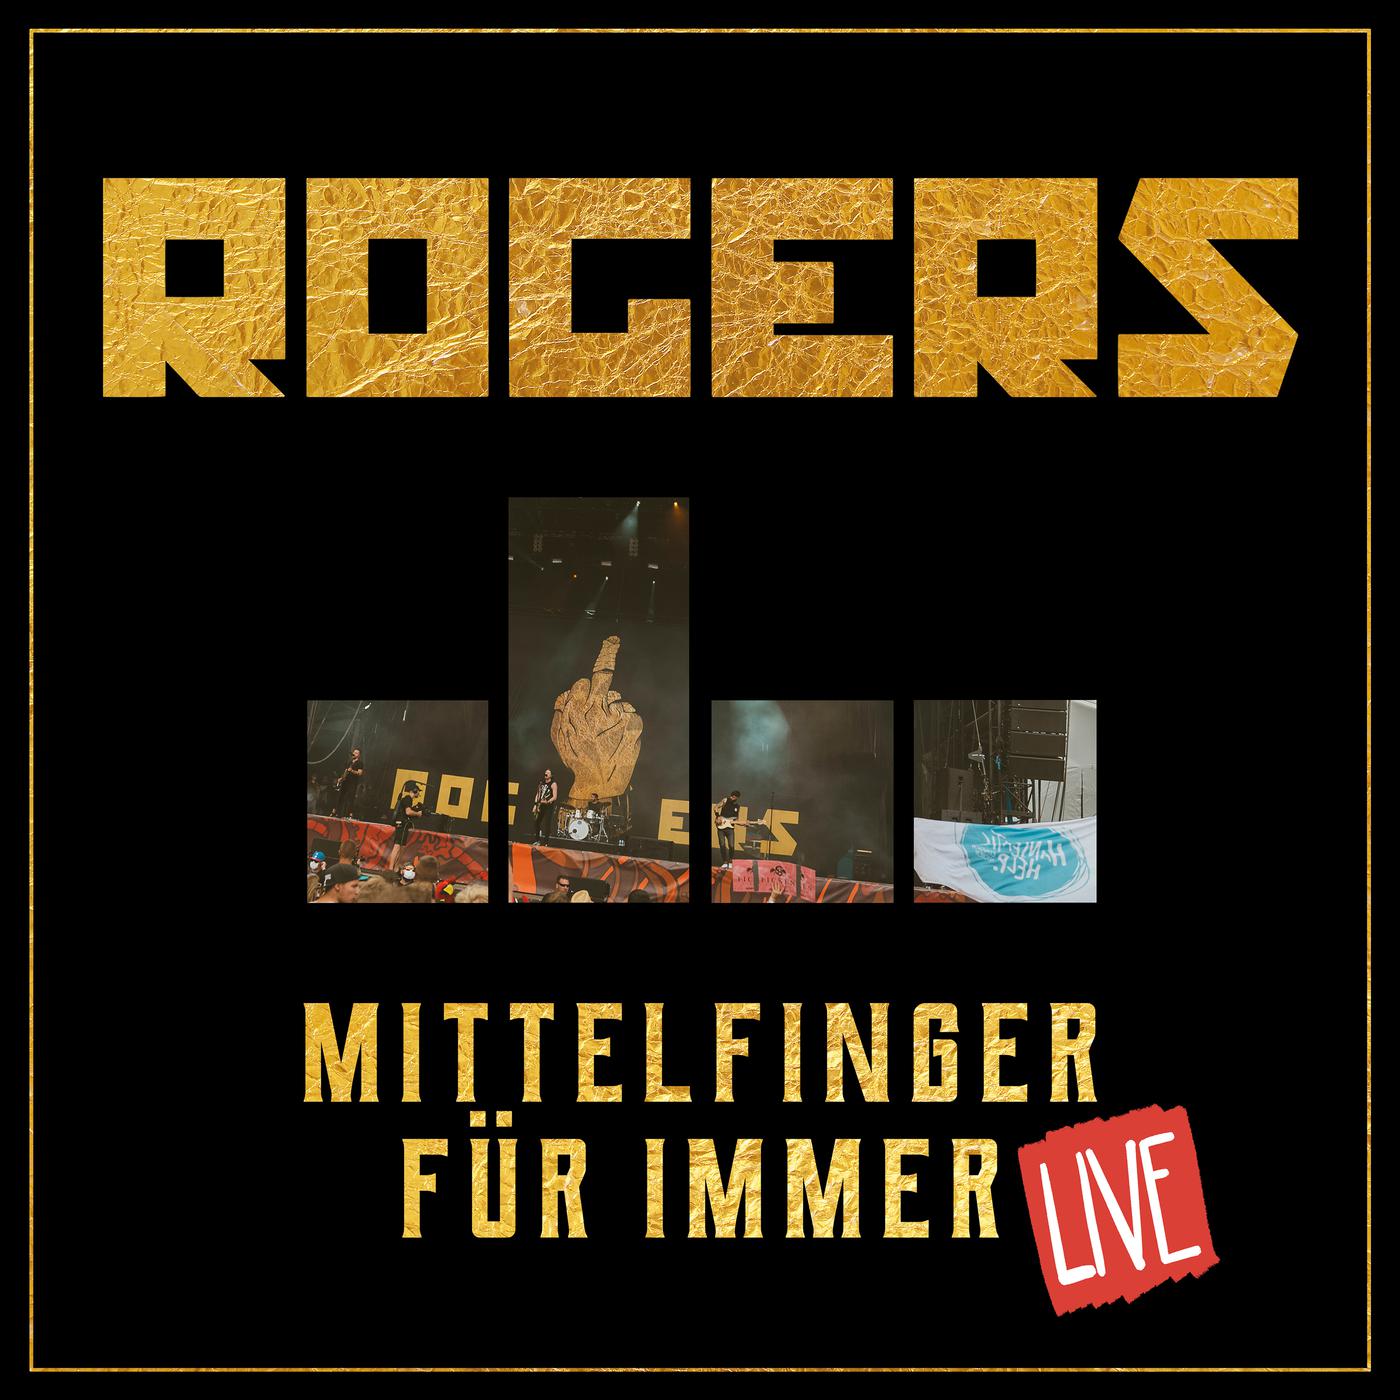 Rogers - Mittelfinger für immer (Black Lemon remix)